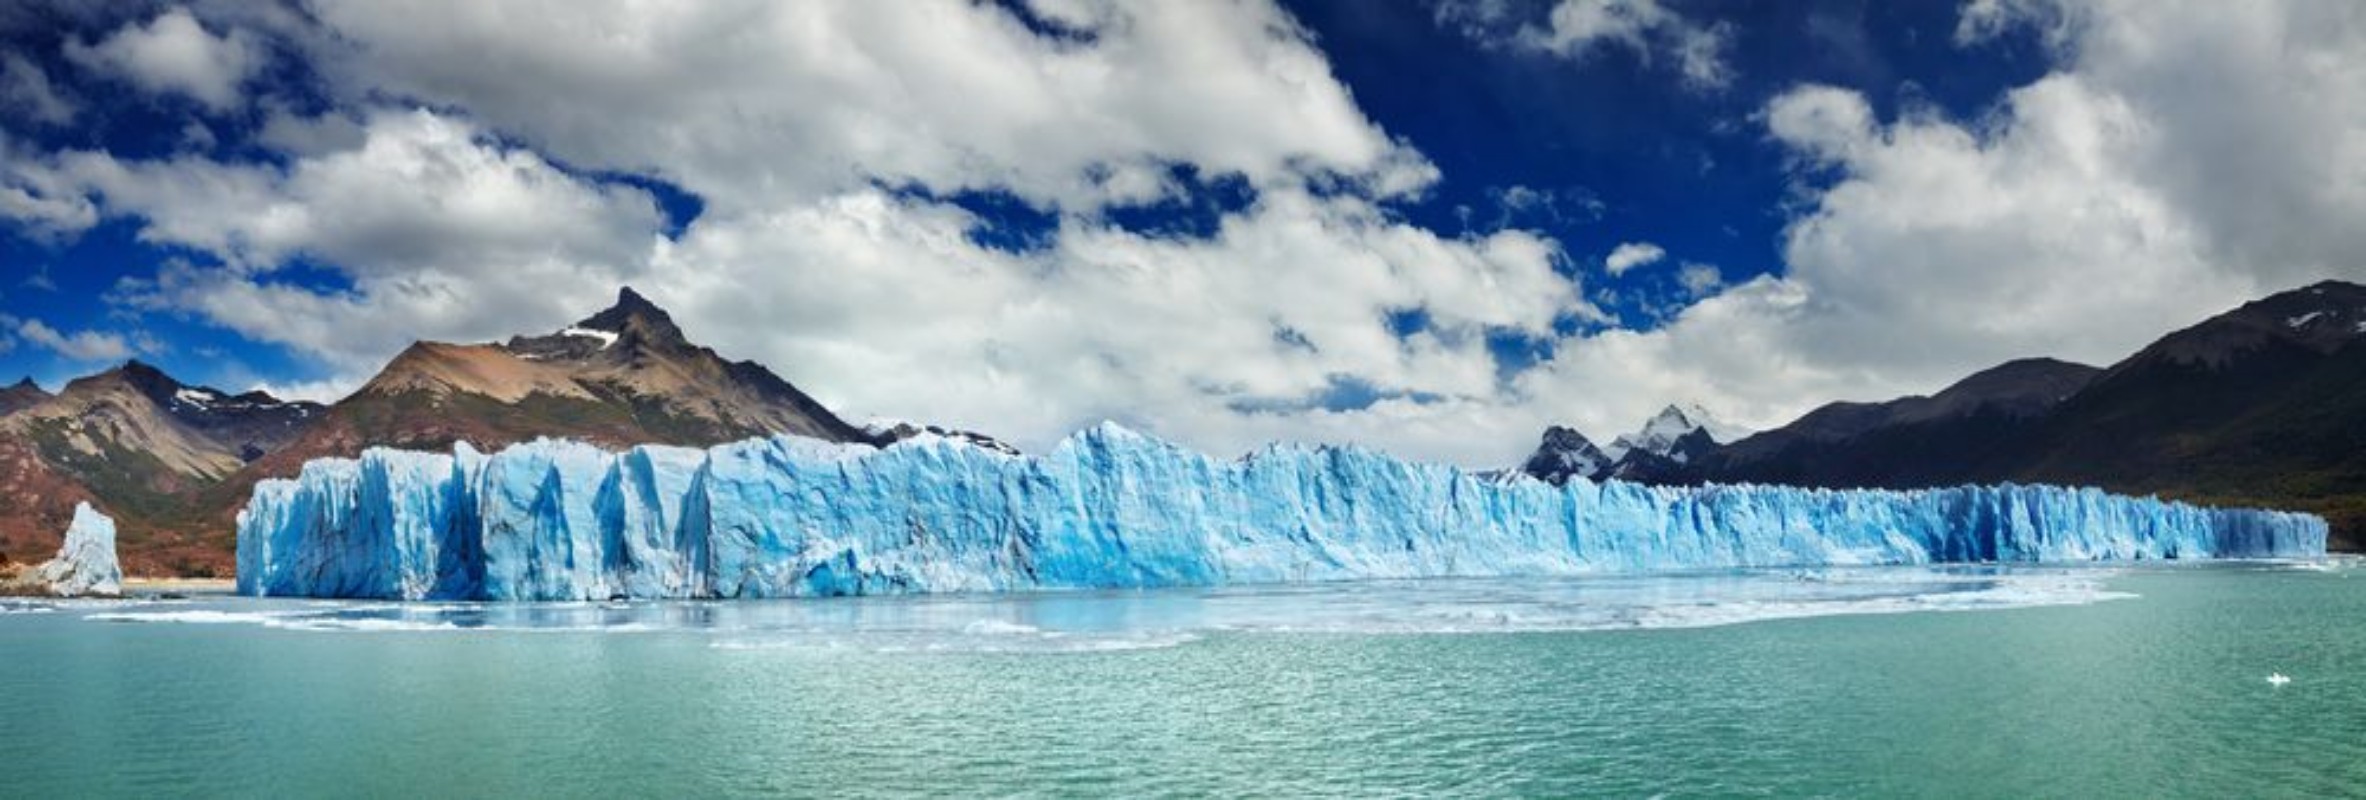 Picture of Perito Moreno Glacier